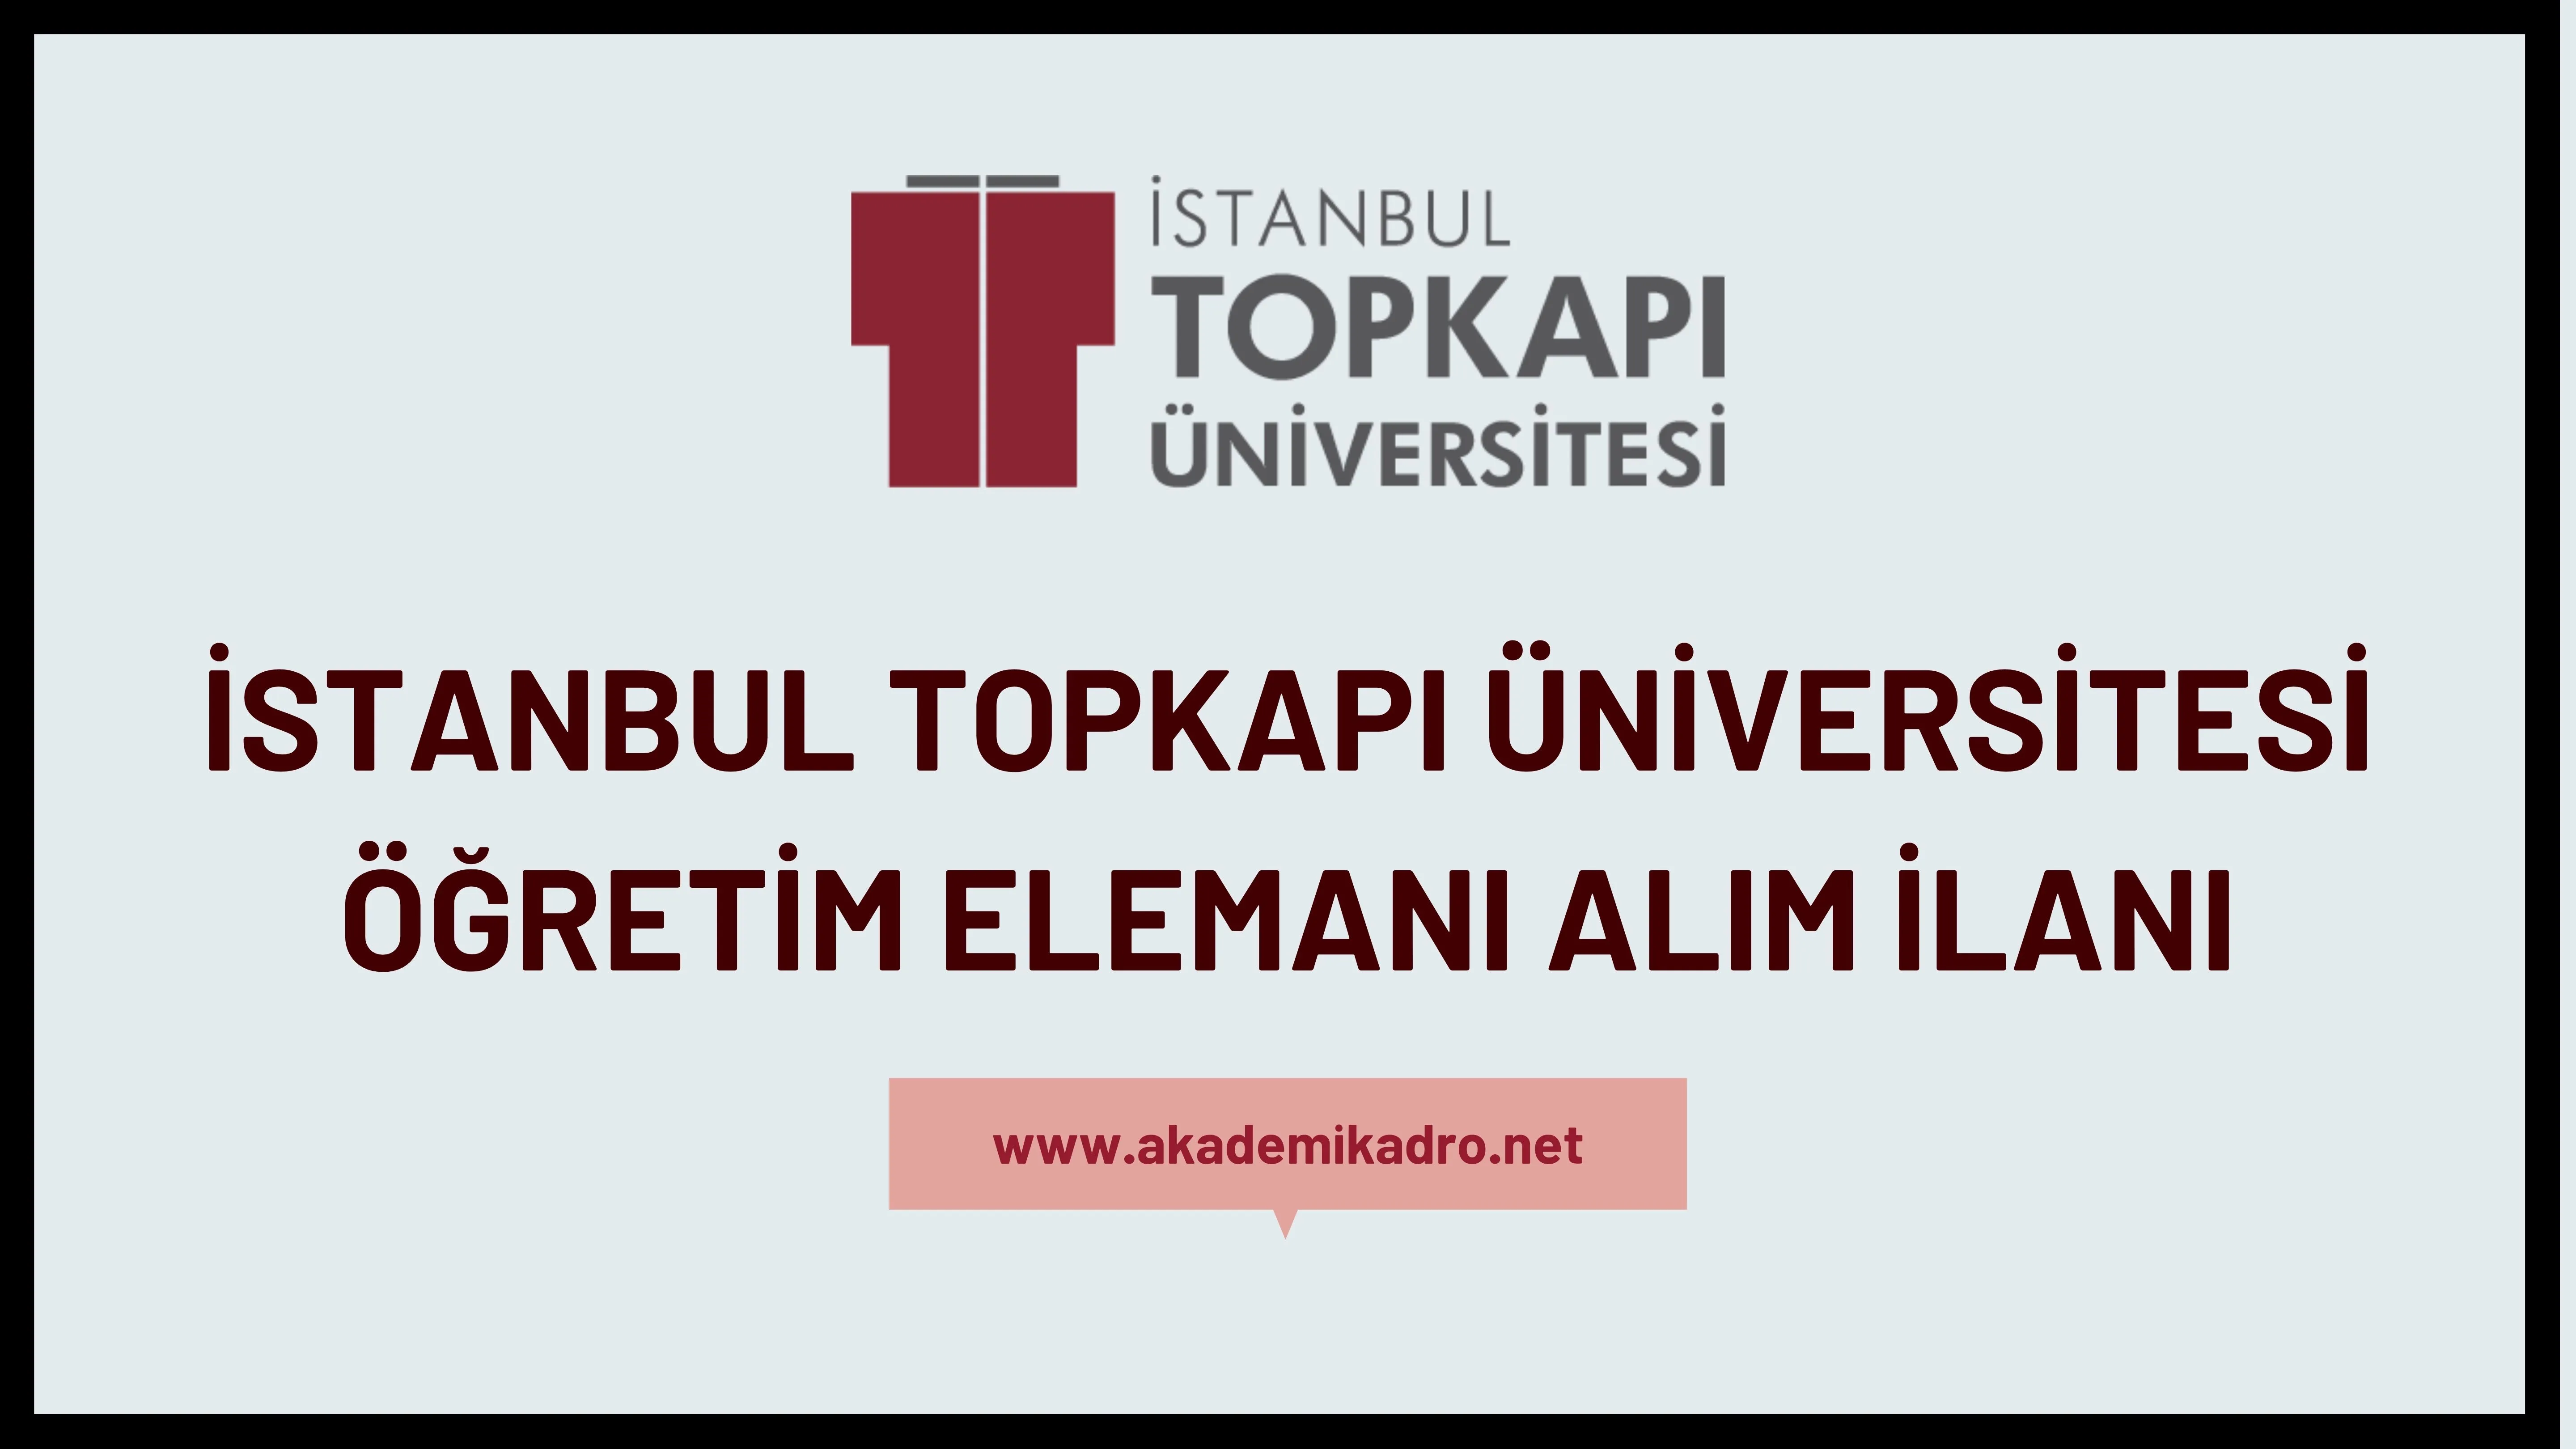 İstanbul Topkapı Üniversitesi 3 Öğretim görevlisi ve öğretim üyesi alacak. 